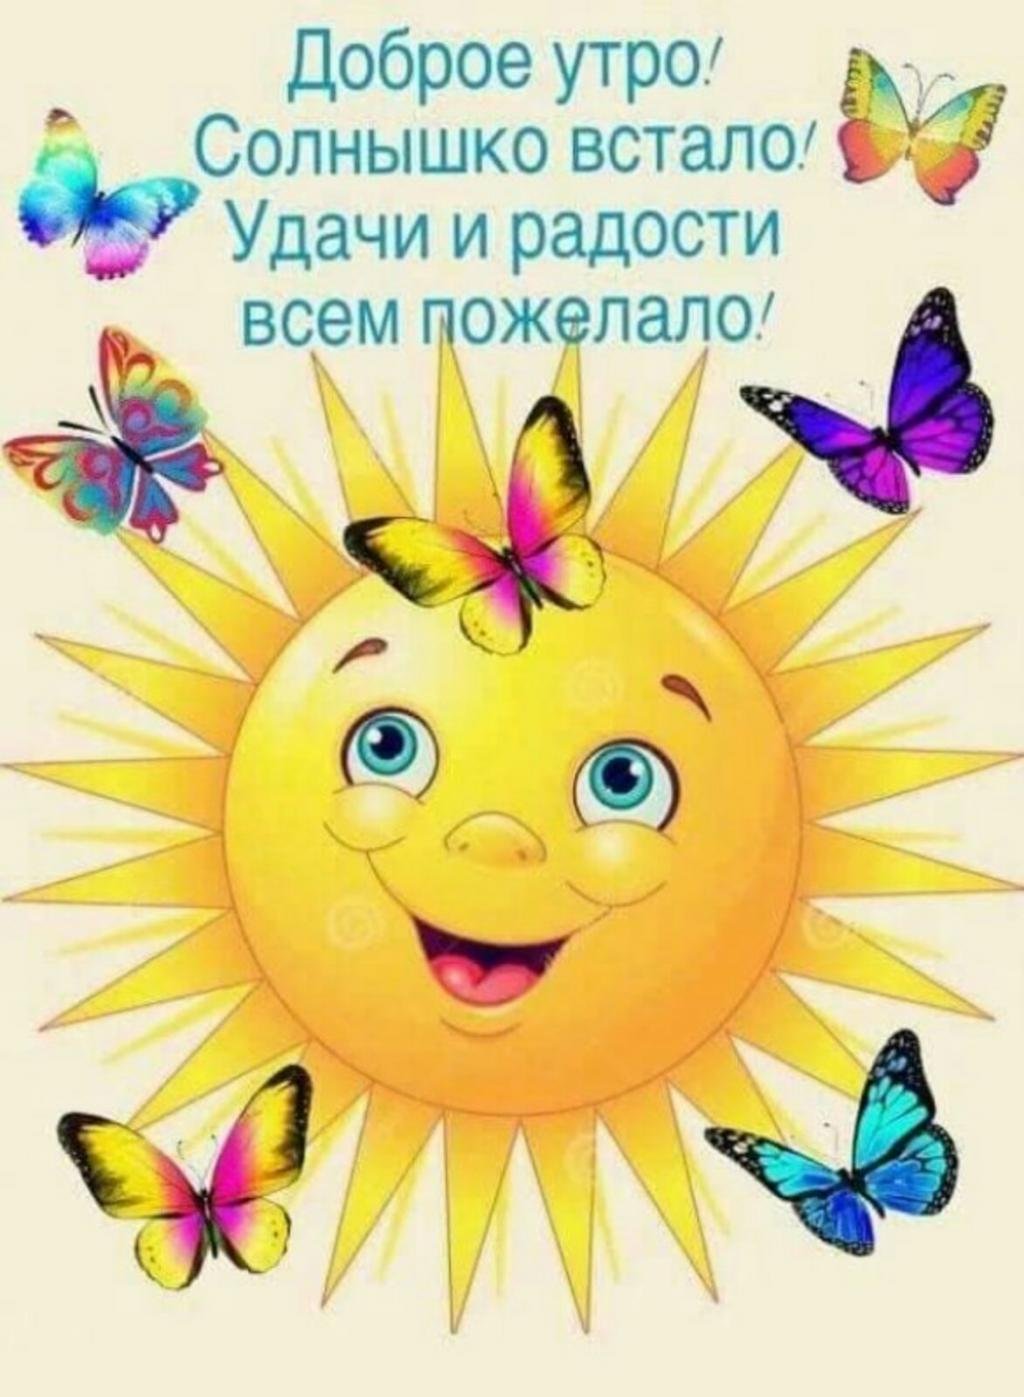 Проснулся улыбнись новому дню. Солнышко картинка для детей. Солнца улыбок и отличного настроения. Позитивные открытки. Открытка солнышко.